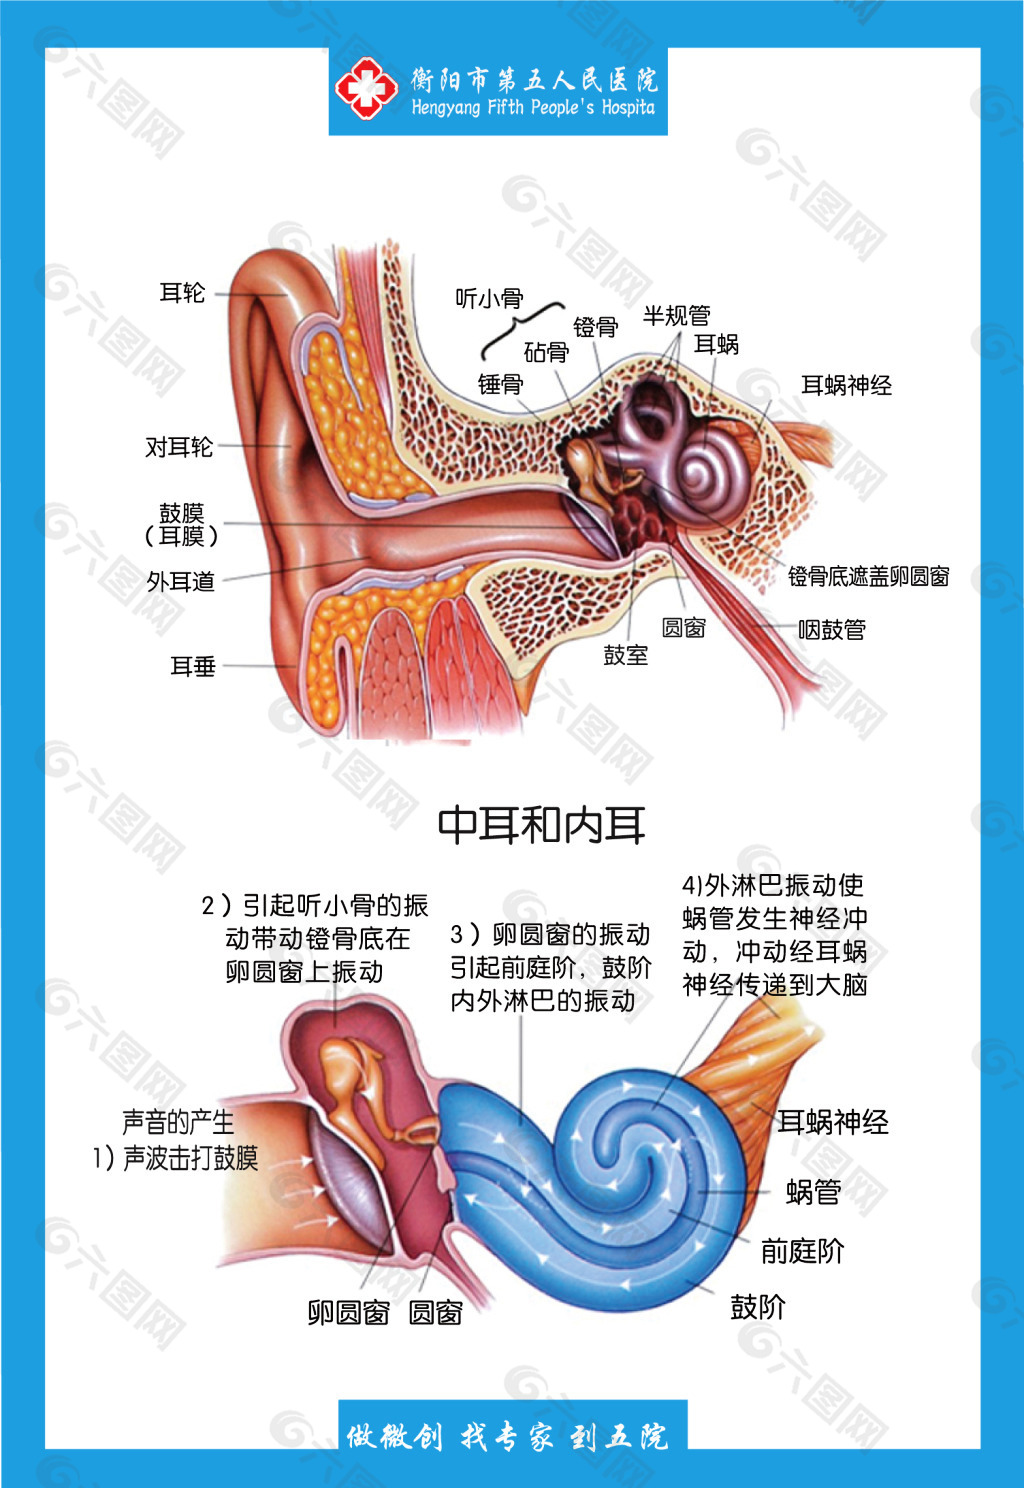 耳鼻咽喉科解剖图共有三个展板